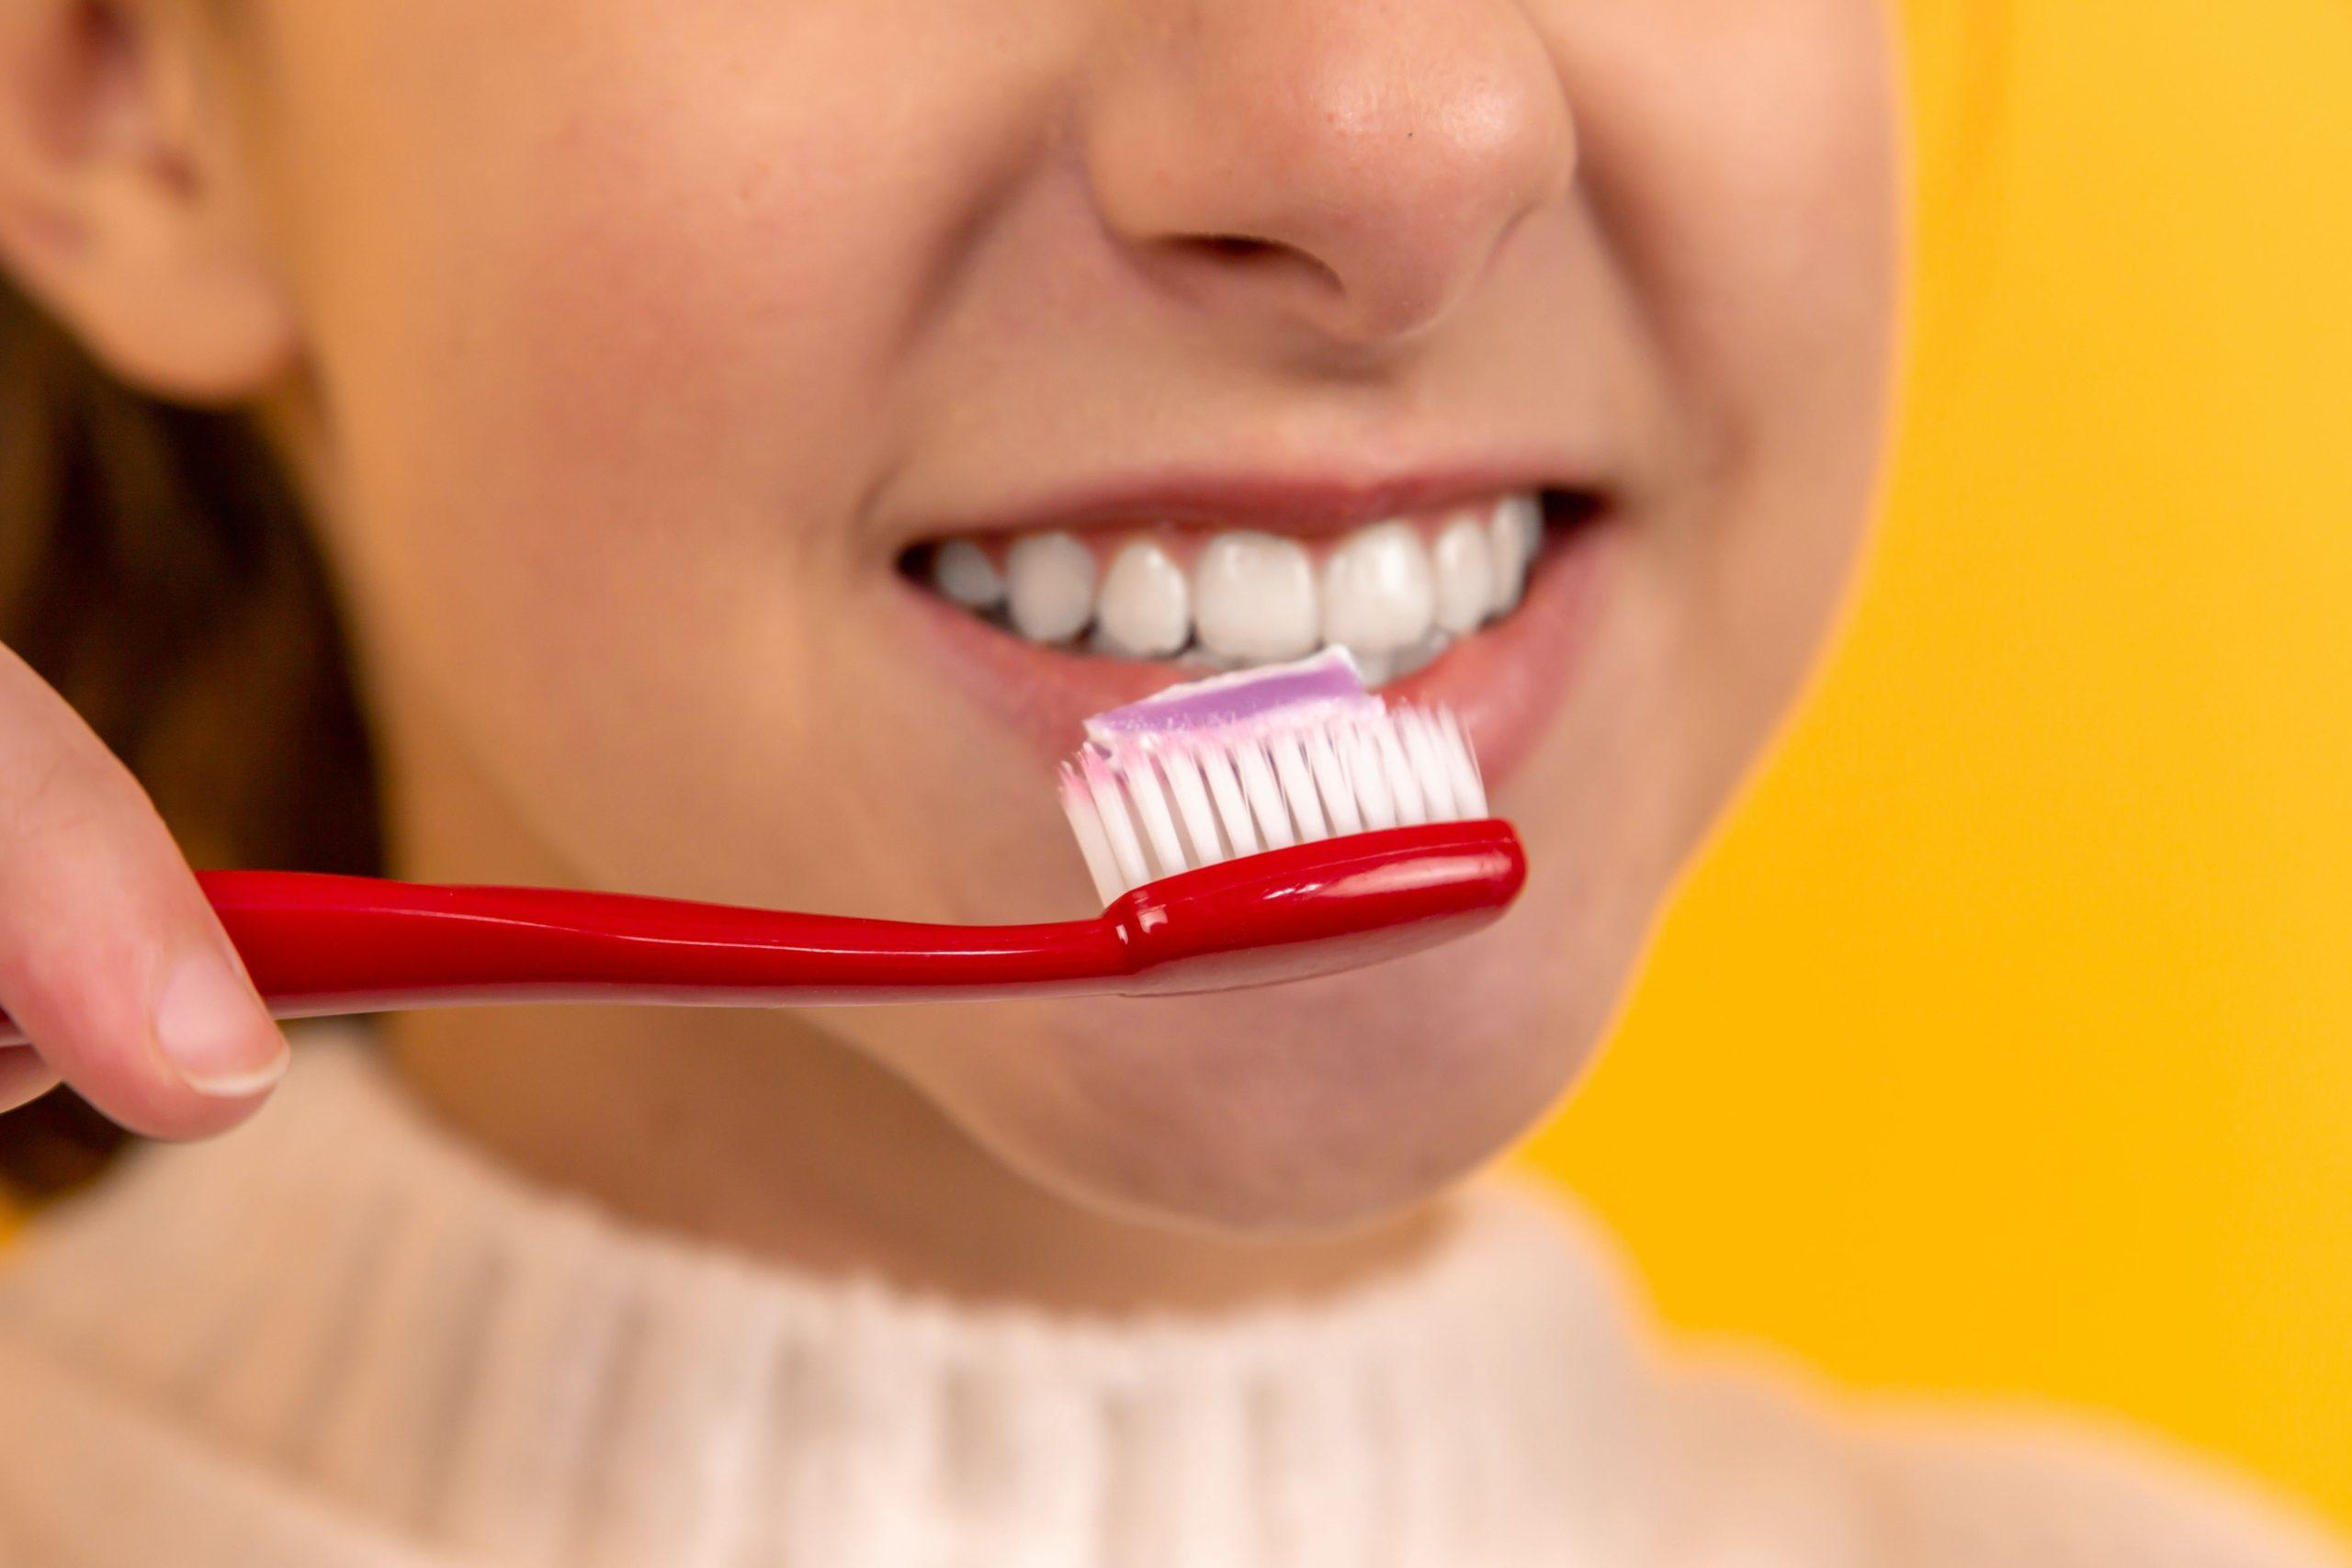 Đảm bảo bạn đánh răng ít nhất hai lần một ngày và dùng chỉ nha khoa ít nhất một lần mỗi ngày để duy trì vệ sinh răng miệng đúng cách. (Nguồn: Internet)